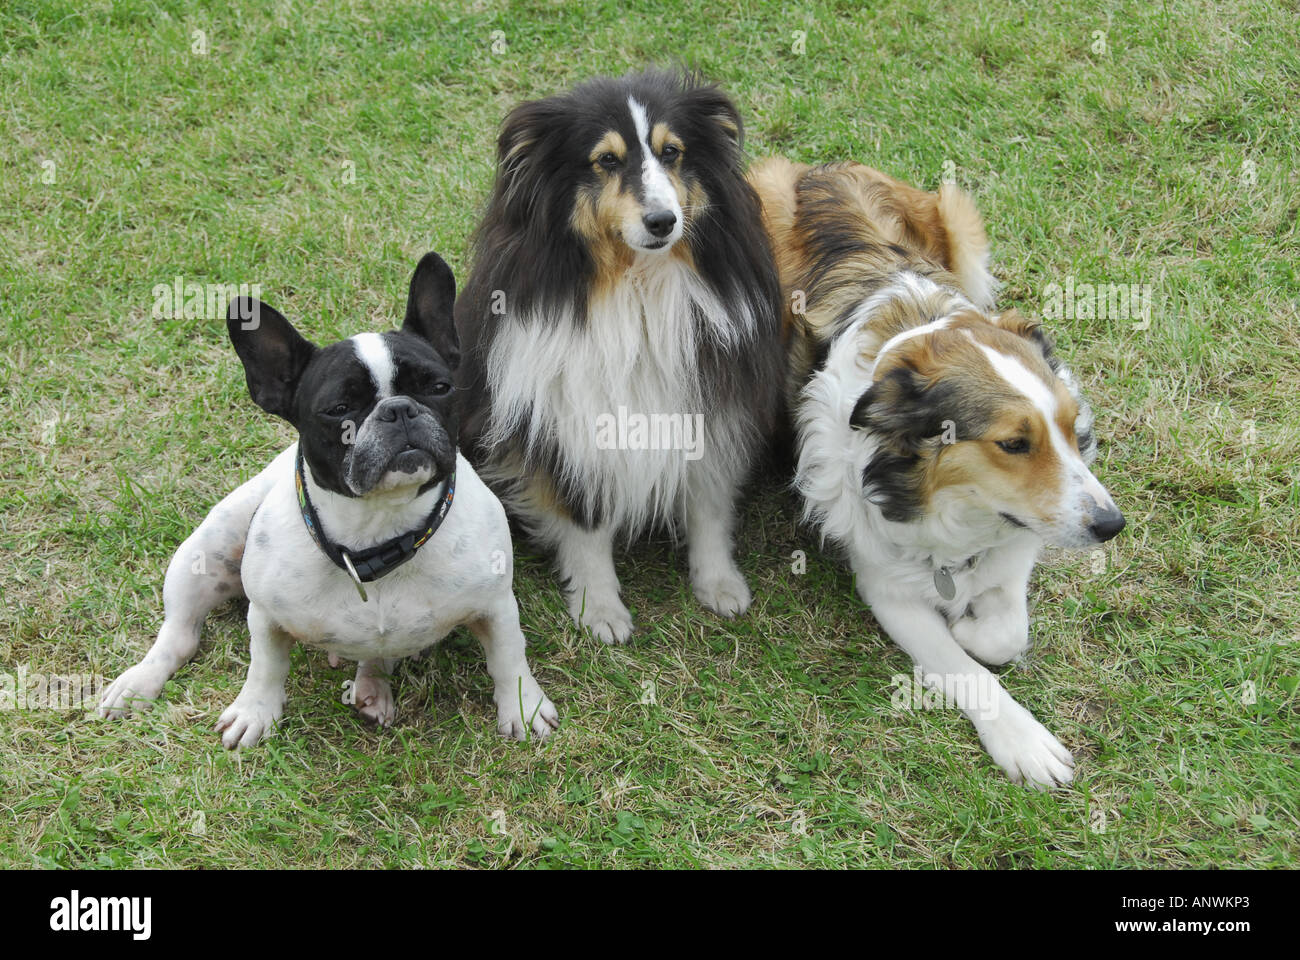 Gruppe von Hunden, französische Bulldogge, Shelty und Collie mix  Stockfotografie - Alamy